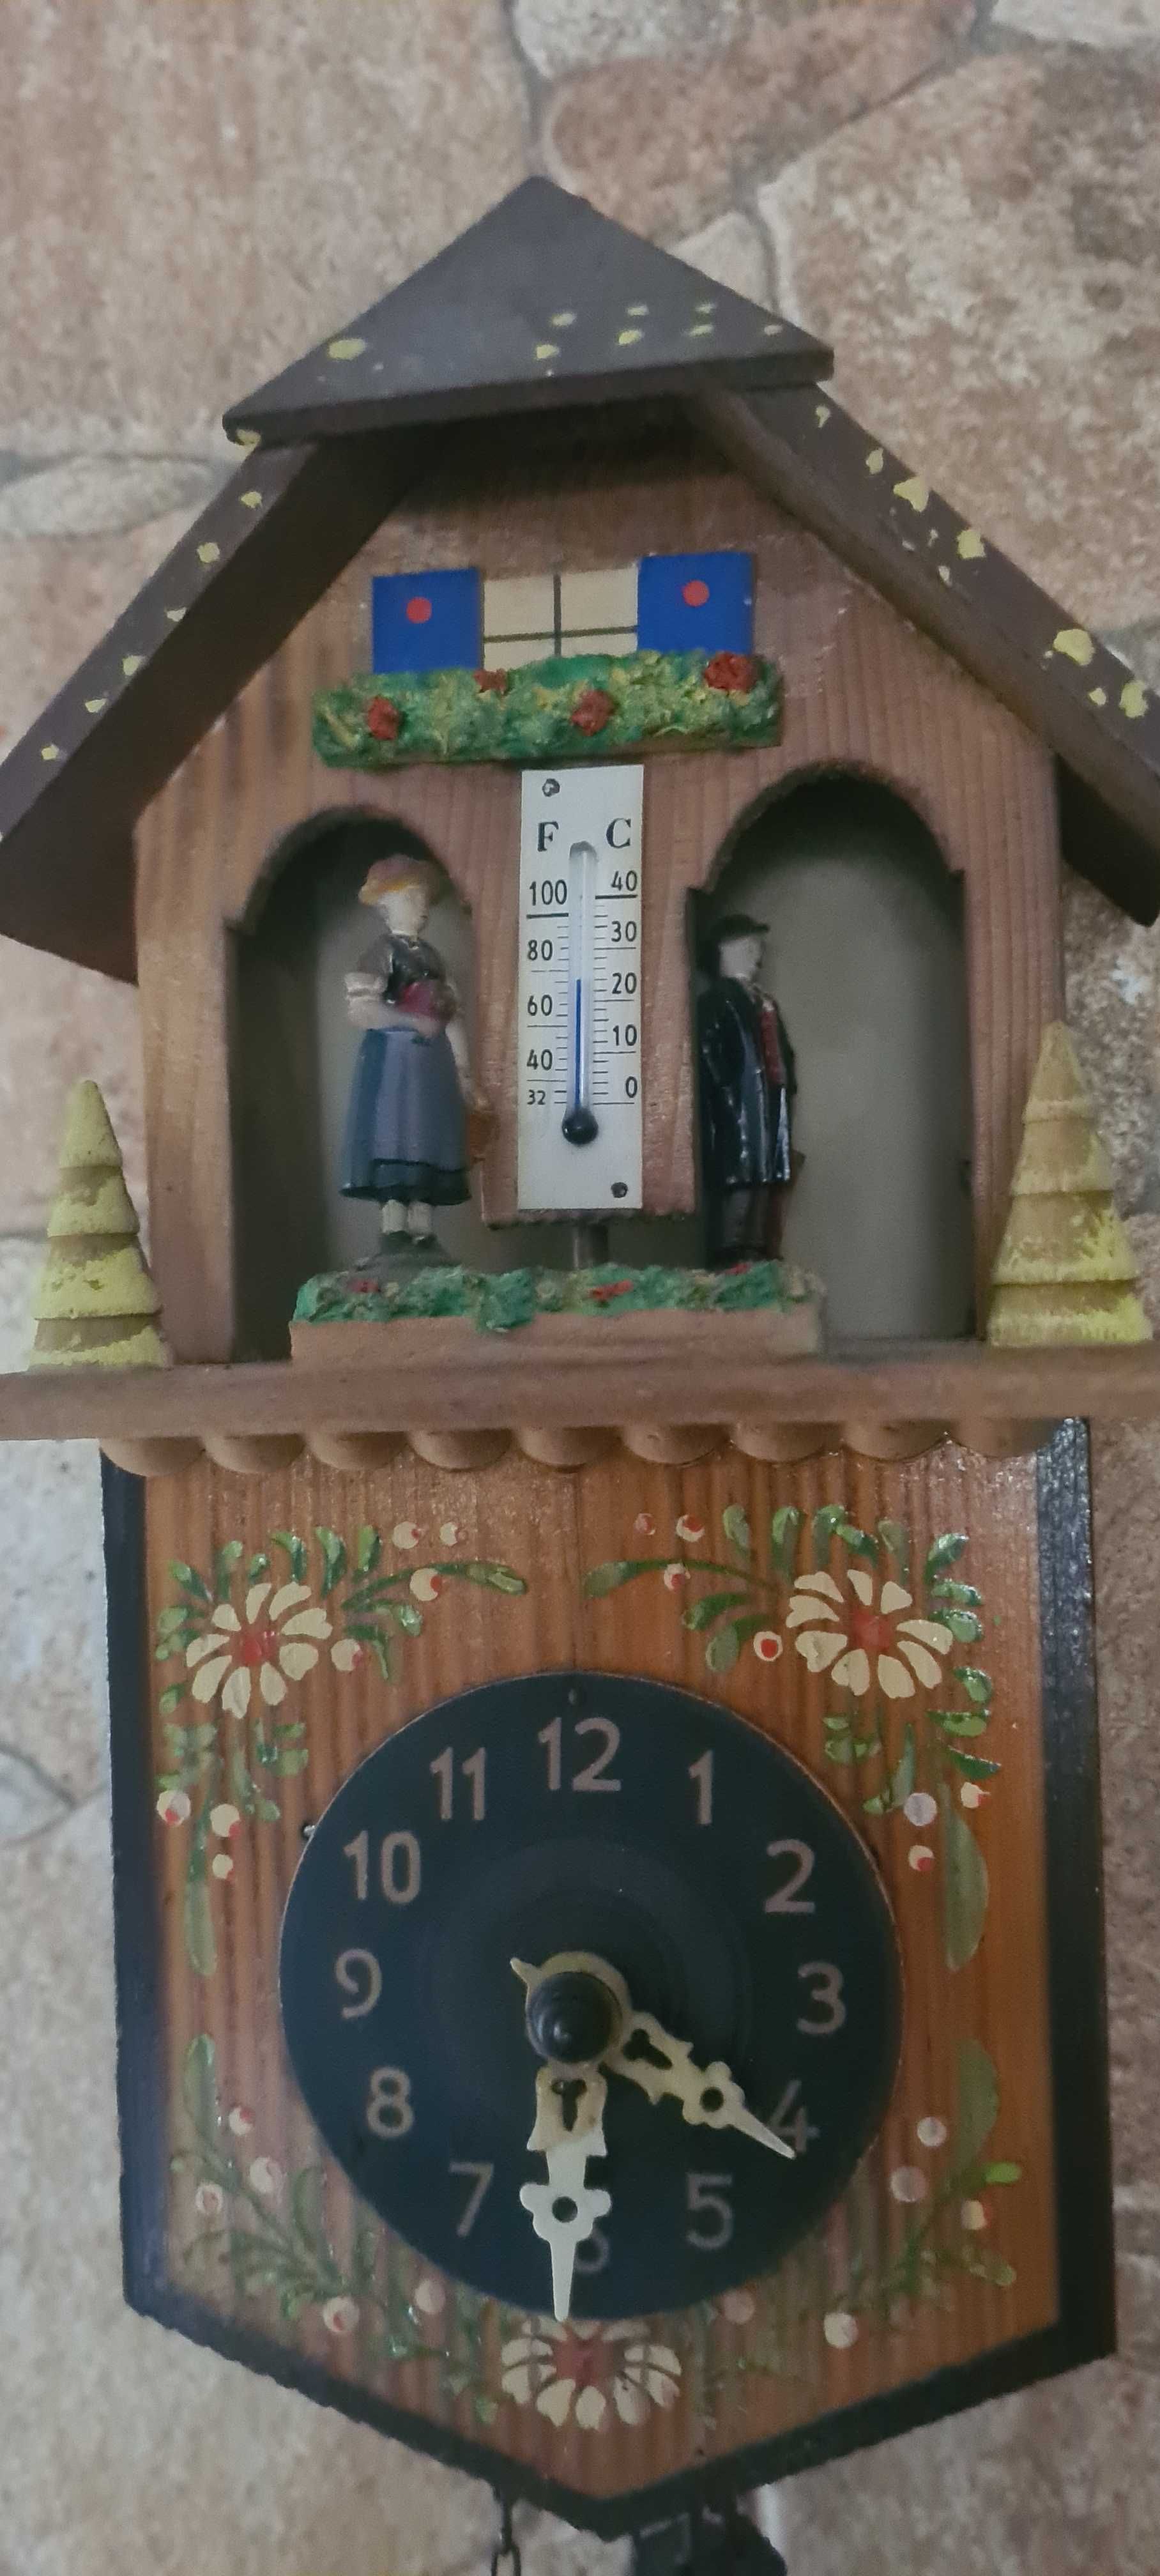 Mini Zegar wiszacy Szyszka termometr i wskaznik Pogody